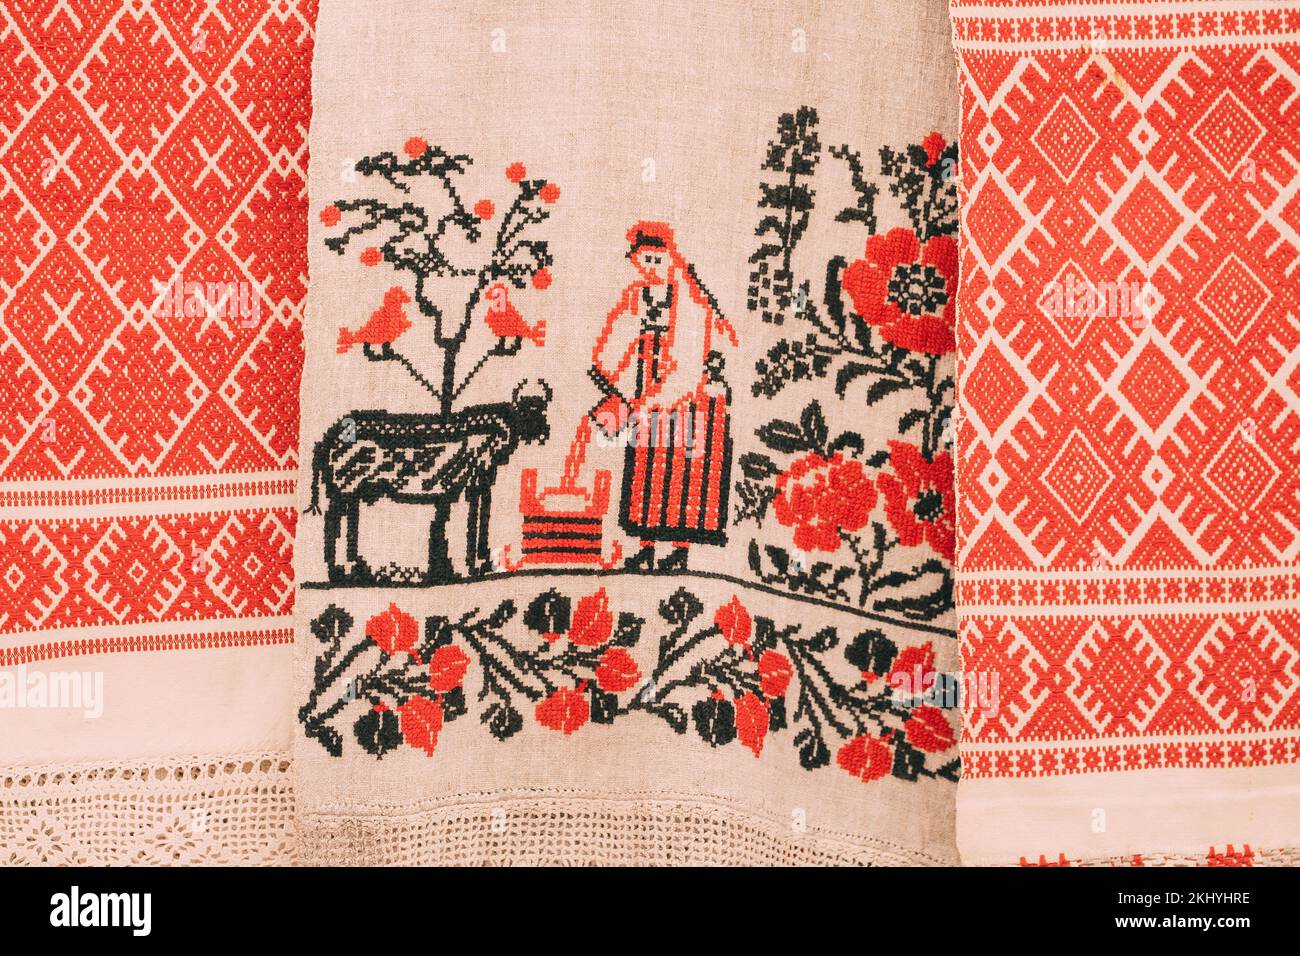 Serviette biélorusse traditionnelle représentant la scène de la vie rurale. Rushnik est un tissu décoratif et rituel. Fait de lin ou de coton il représente généralement WO Banque D'Images